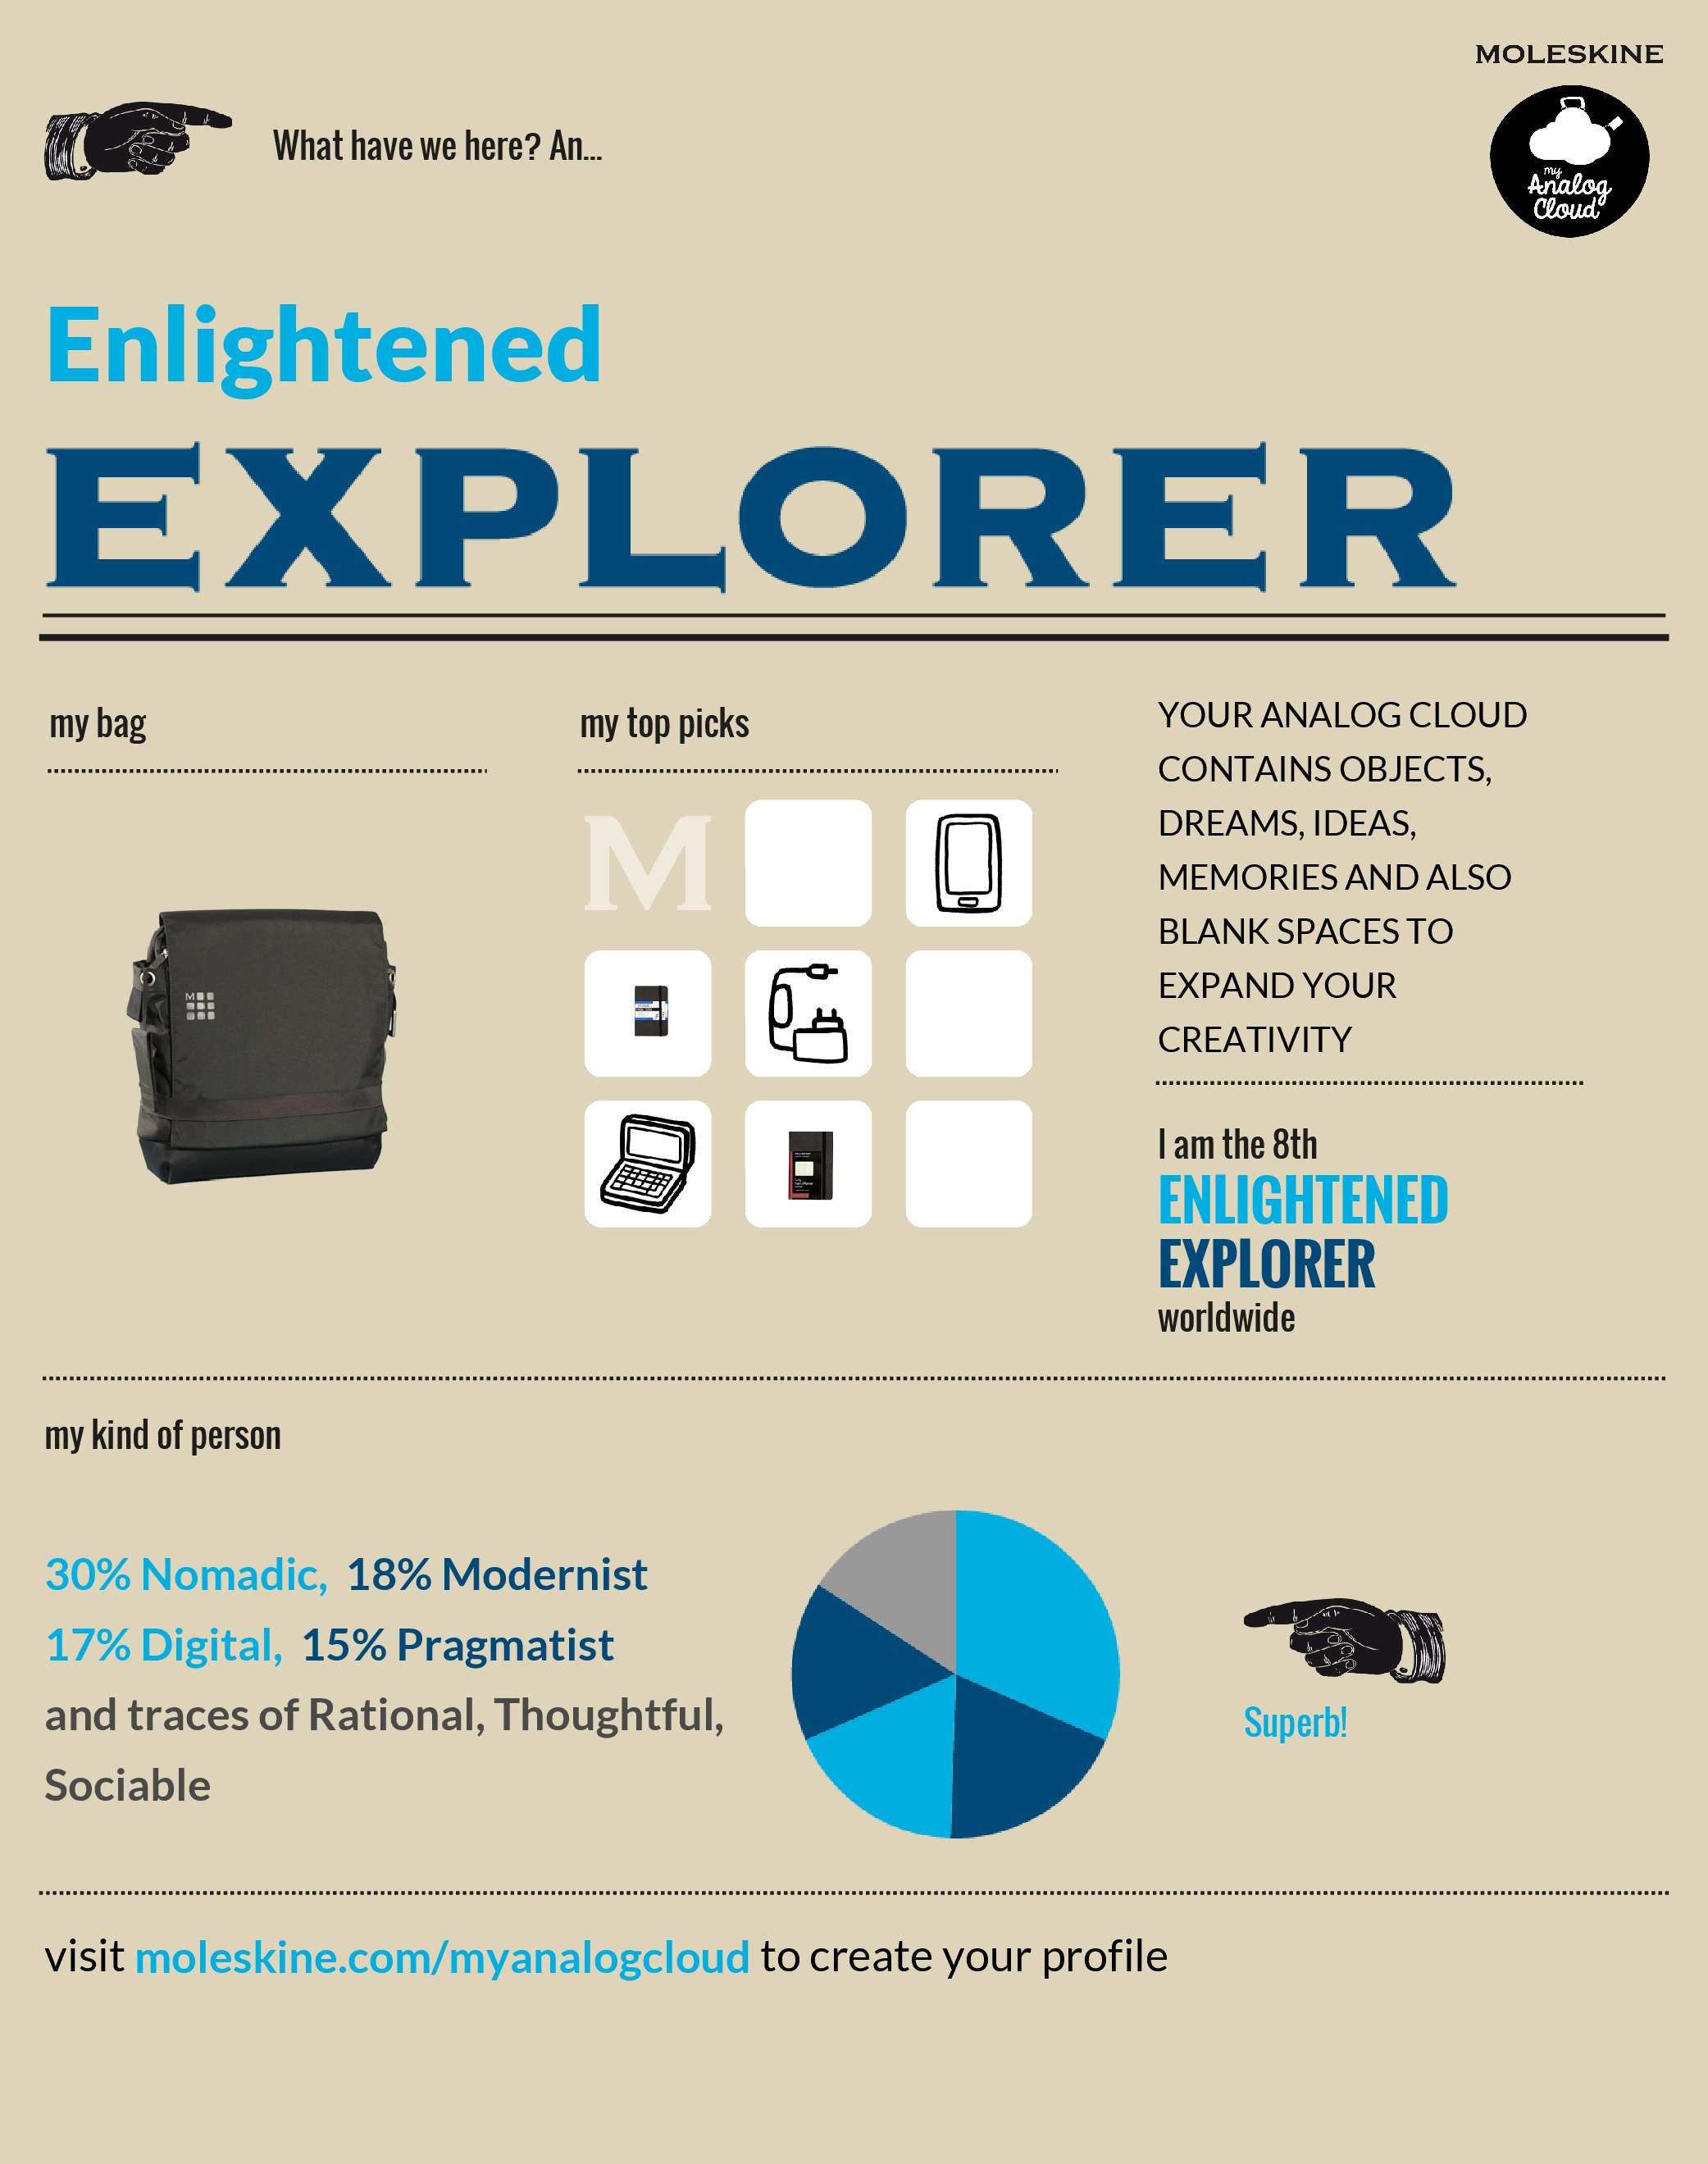 8th Enlightened Explorer